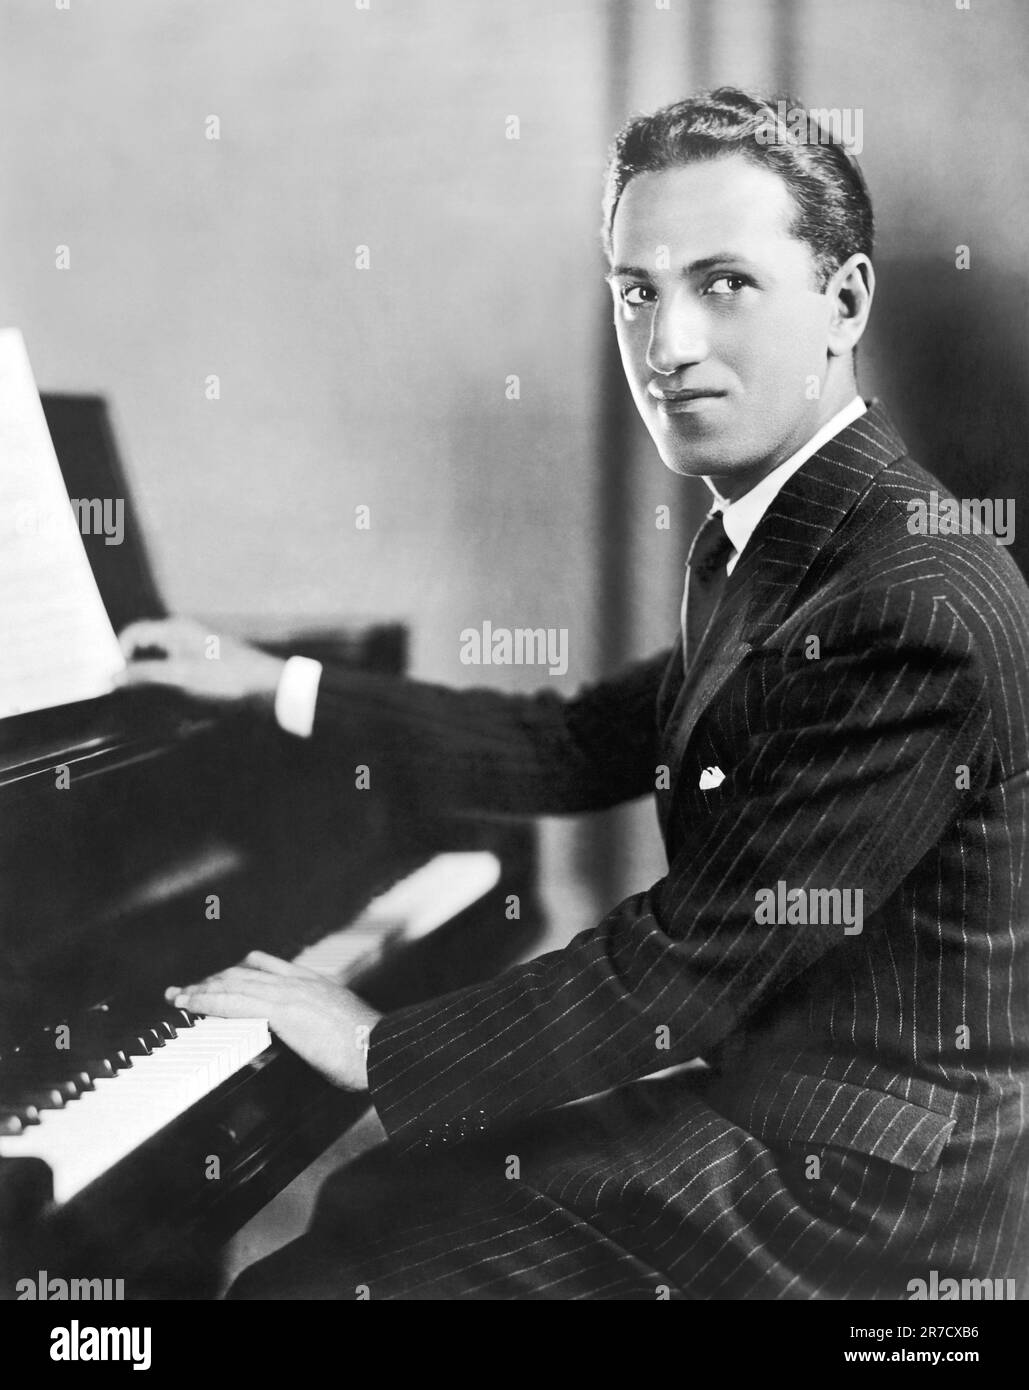 Nueva York, Nueva York: Agosto de 1928, Una fotografía promocional de la National Broadcasting Company para el compositor y pianista estadounidense George Gershwin. Foto de stock